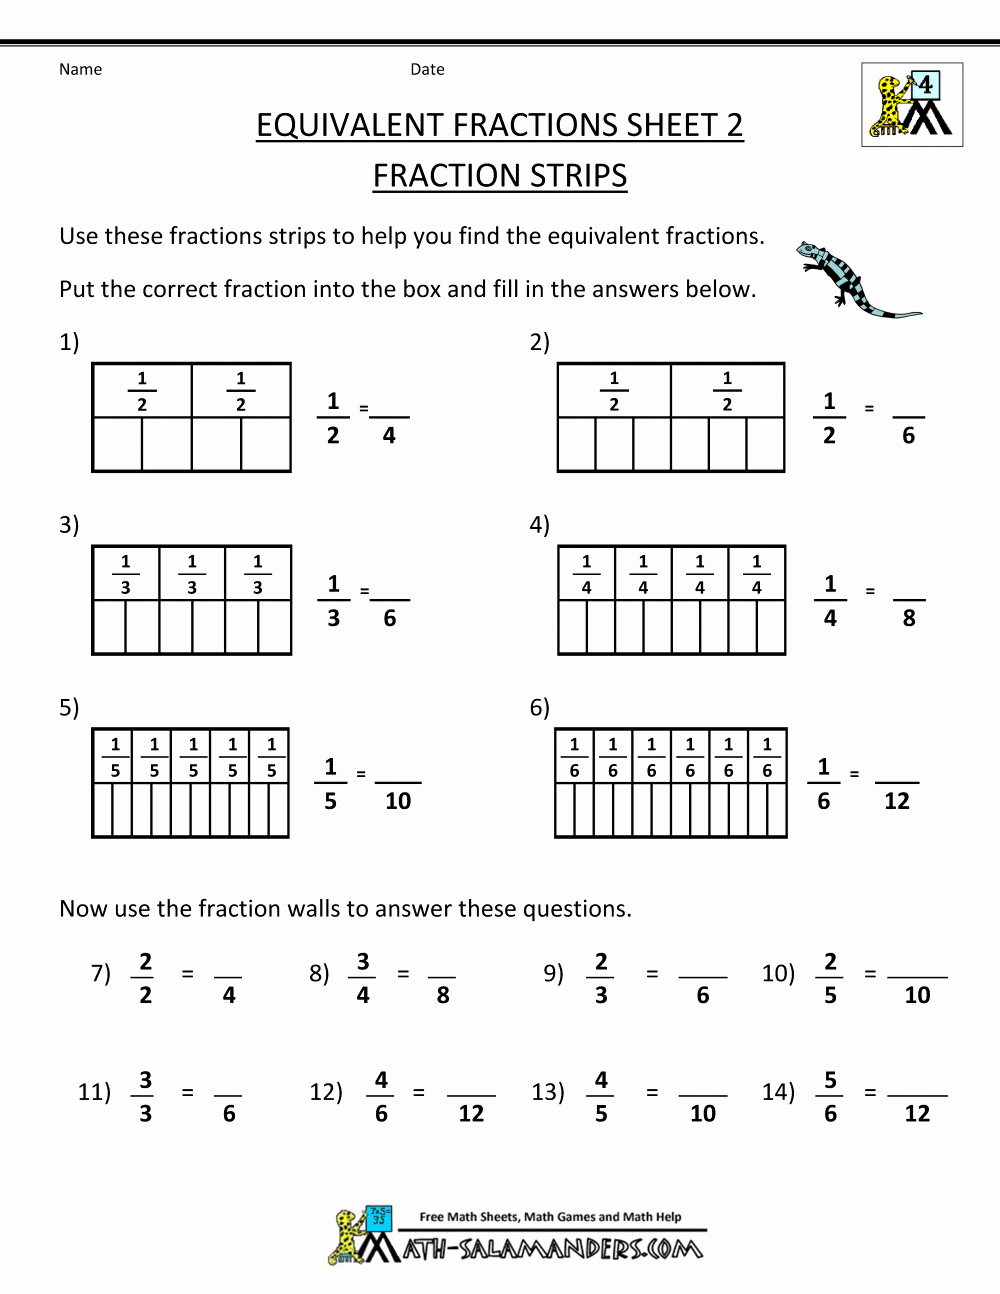 Equivalent Fractions Worksheet Pdf Inspirational Equivalent Fractions Worksheet